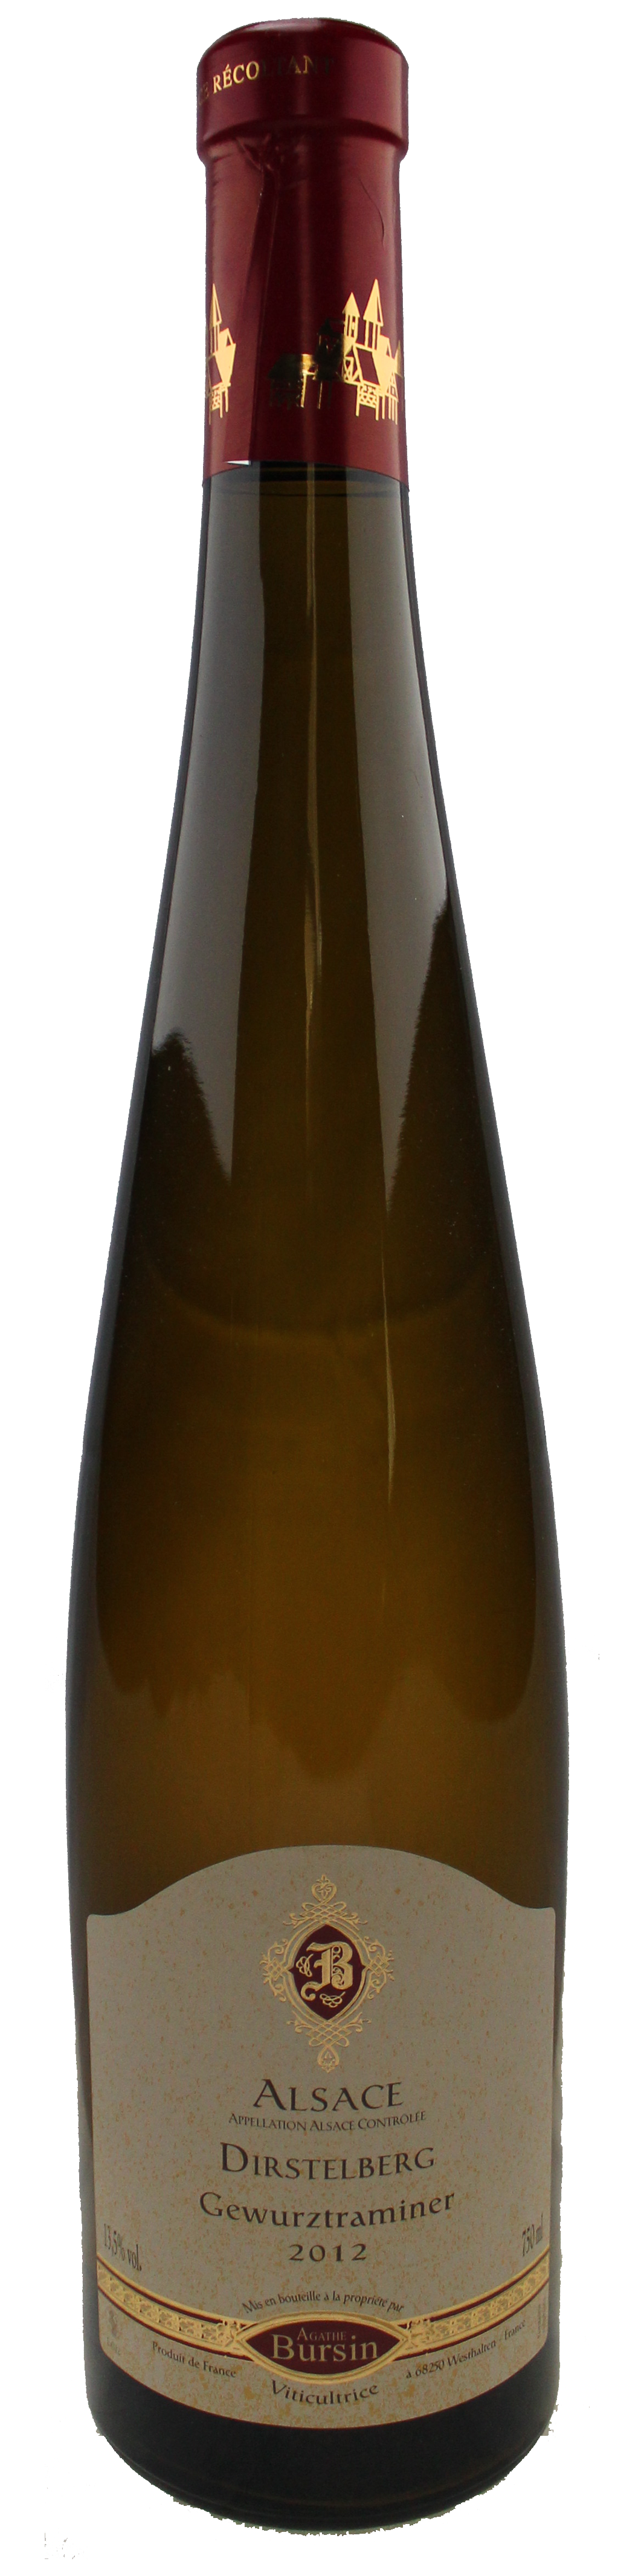 Bottle shot of 2012 Gewurztraminer Dirstelberg